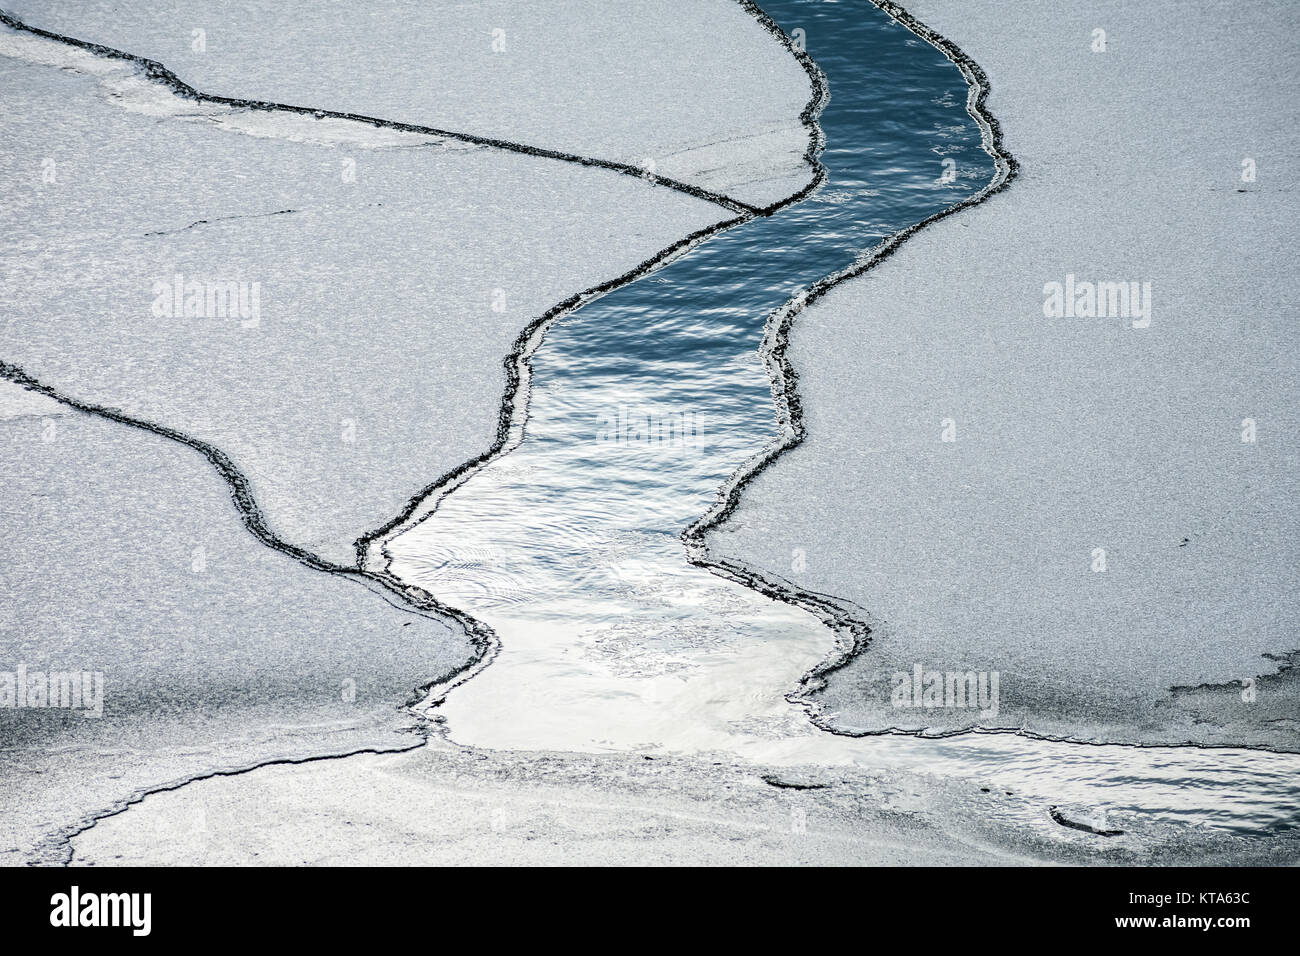 L'eau qui coule au milieu d'un lac gelé Banque D'Images